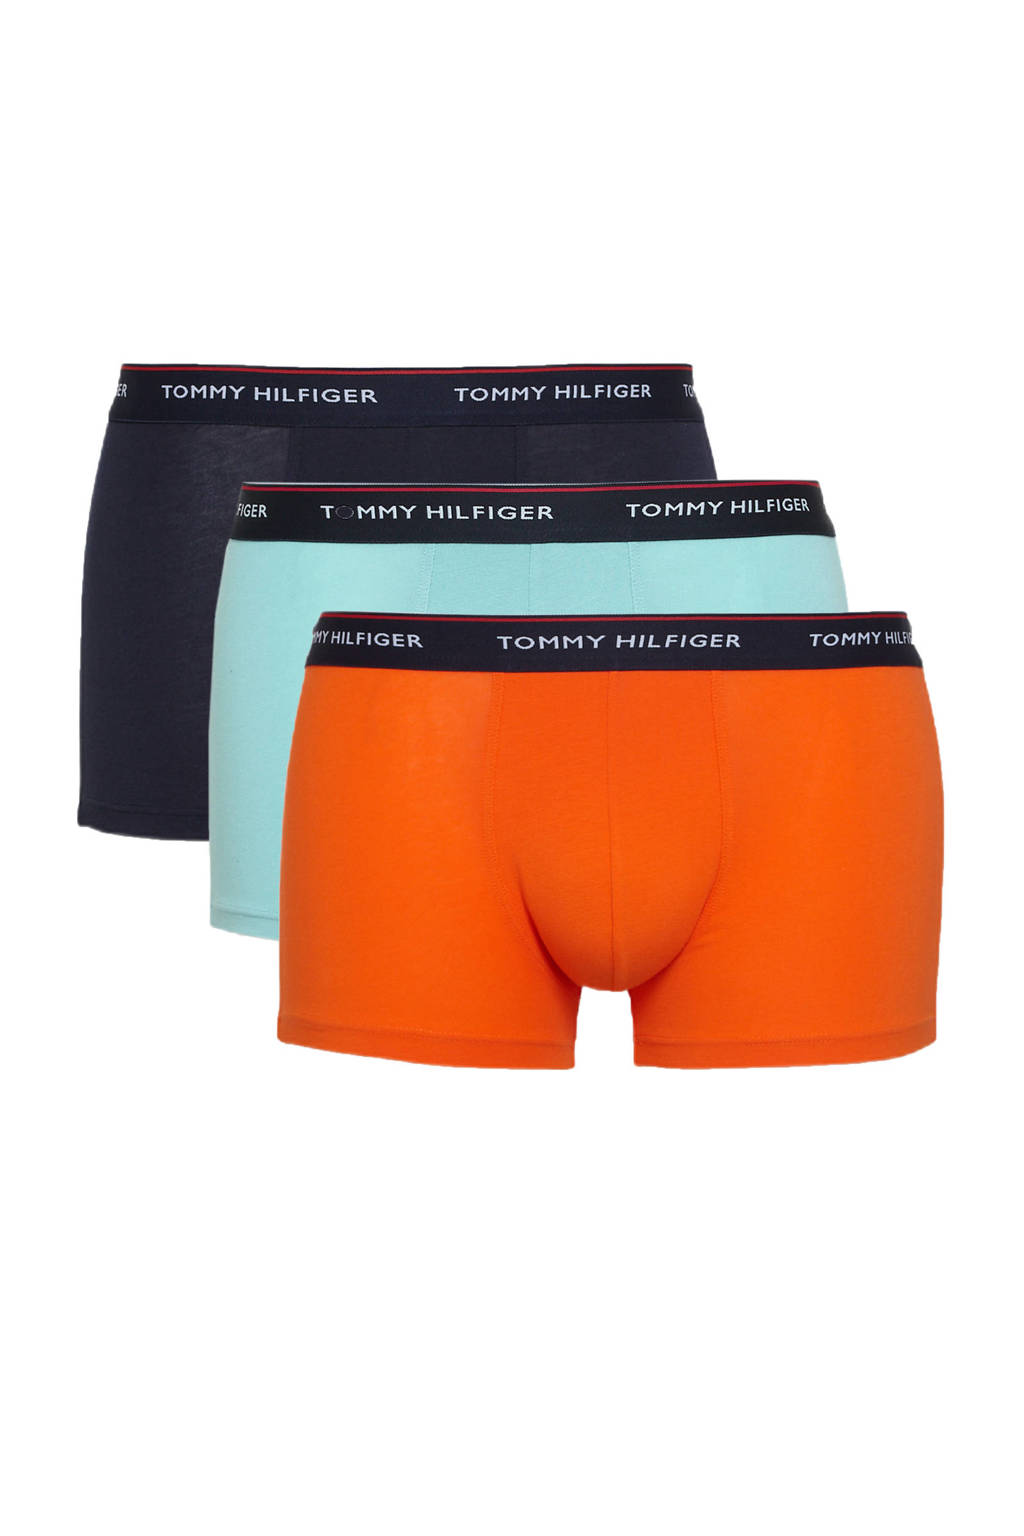 Tommy Hilfiger boxershort (set van 3), Oranje/donkerblauw/lichtblauw